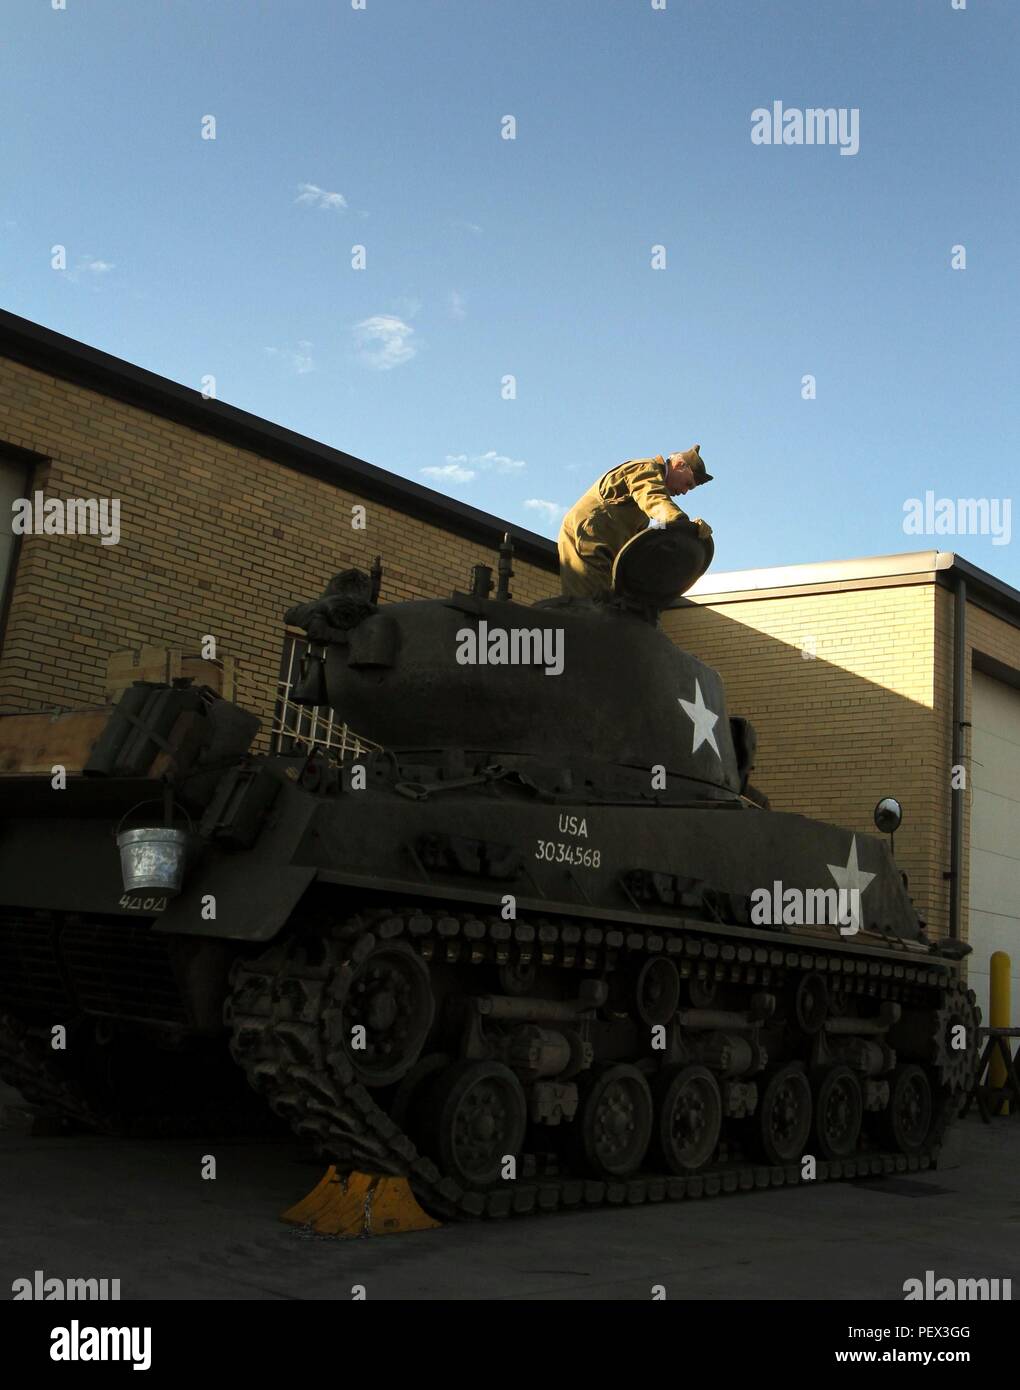 Weltkrieg II re-Enactor und pensionierte Armee Oberstleutnant Alexander Kose gibt eine M4 Sherman Panzer. Sherman, der fordert, Philadelphia Home, glaubt Re-inszenierungen des Zweiten Weltkriegs, wie Touring mit der Sherman Panzer, wichtig sind, weil er und seine Kollegen sind bestrebt, die Geschichte der Panzertruppen lebendig zu halten. Die re-Enactor noncommissioned Officer wurde zur Unterstützung der Bekämpfung der 728th Sustainment Support Battalion und Offizier Development Program. (U.S. Army National Guard Foto von Pfc. Hannah Baker, 109 Mobile Public Affairs Ablösung/Freigegeben) Stockfoto